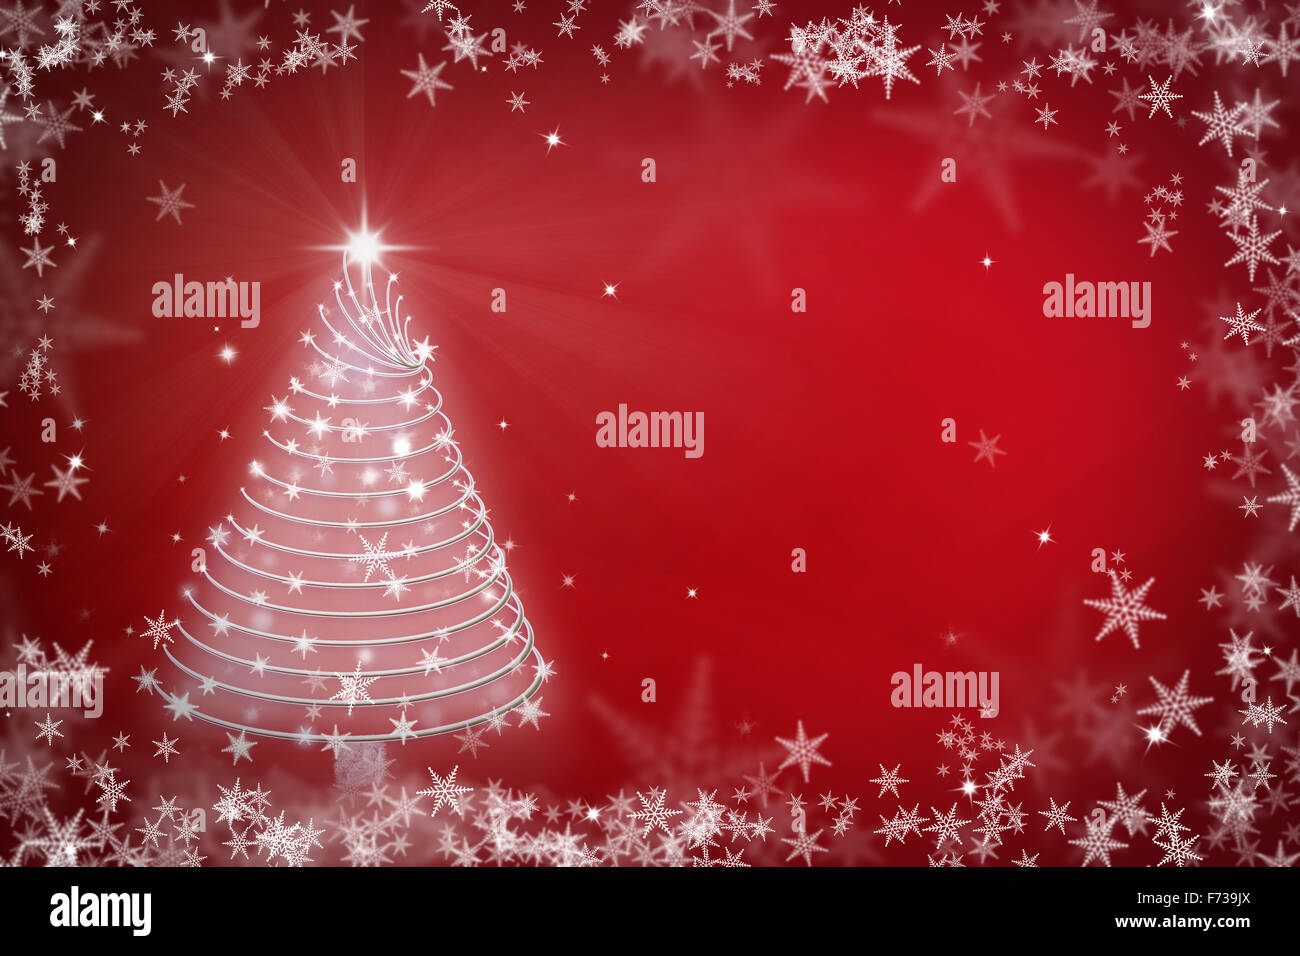 La magia del árbol de Navidad roja ilustración de fondo Foto de stock